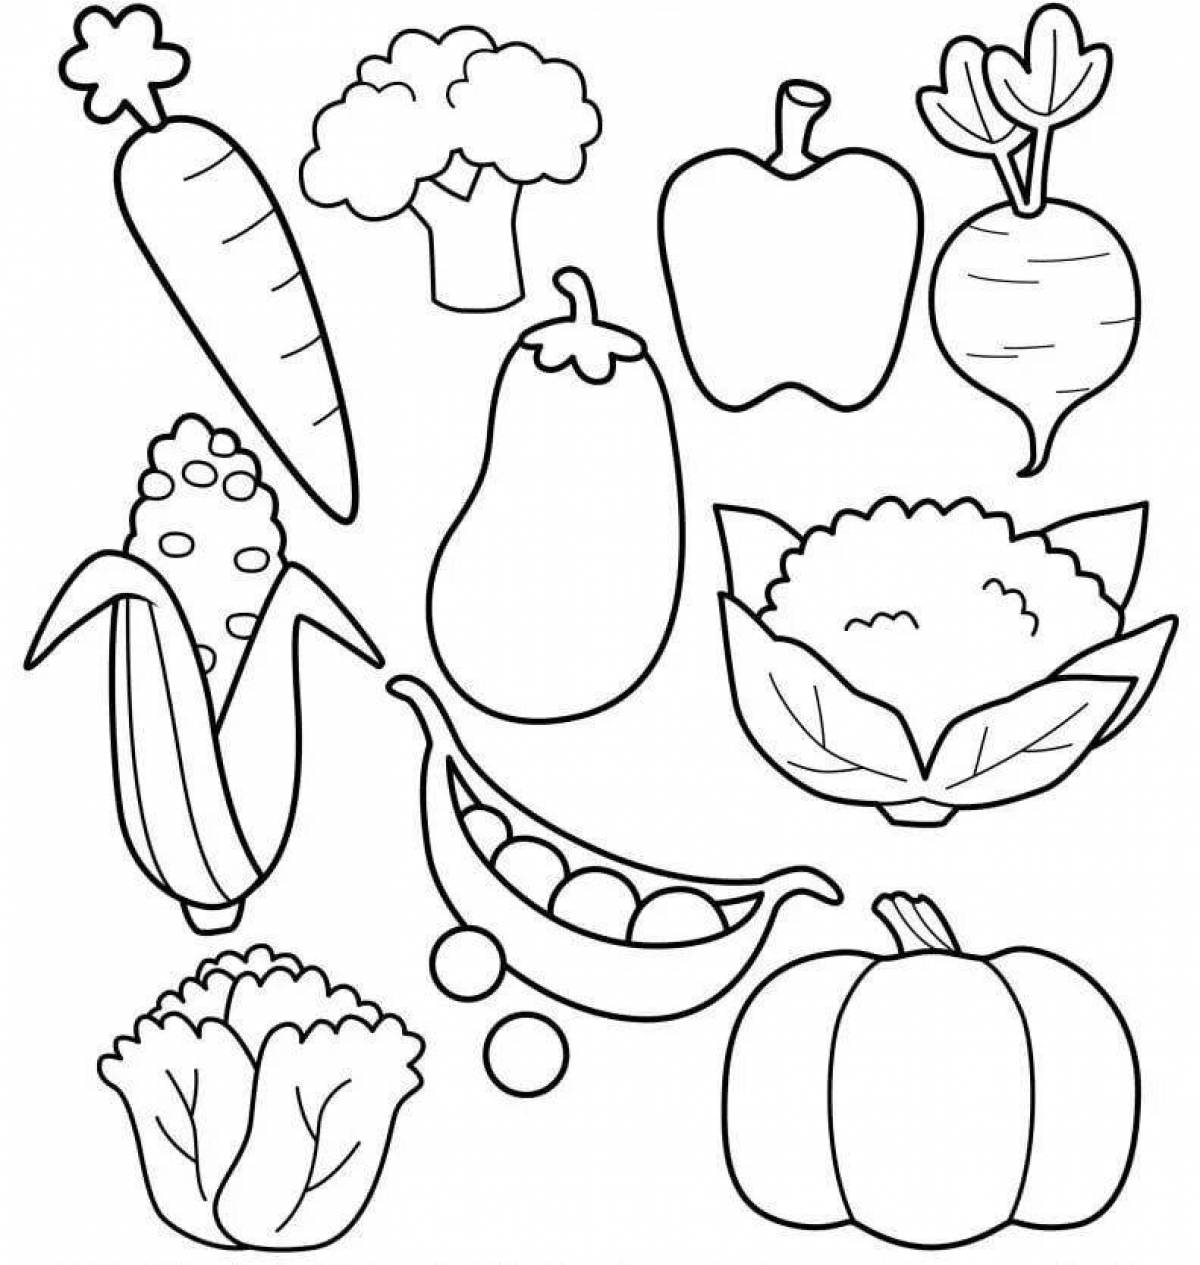 Красочно-развлекательная раскраска овощей для детей